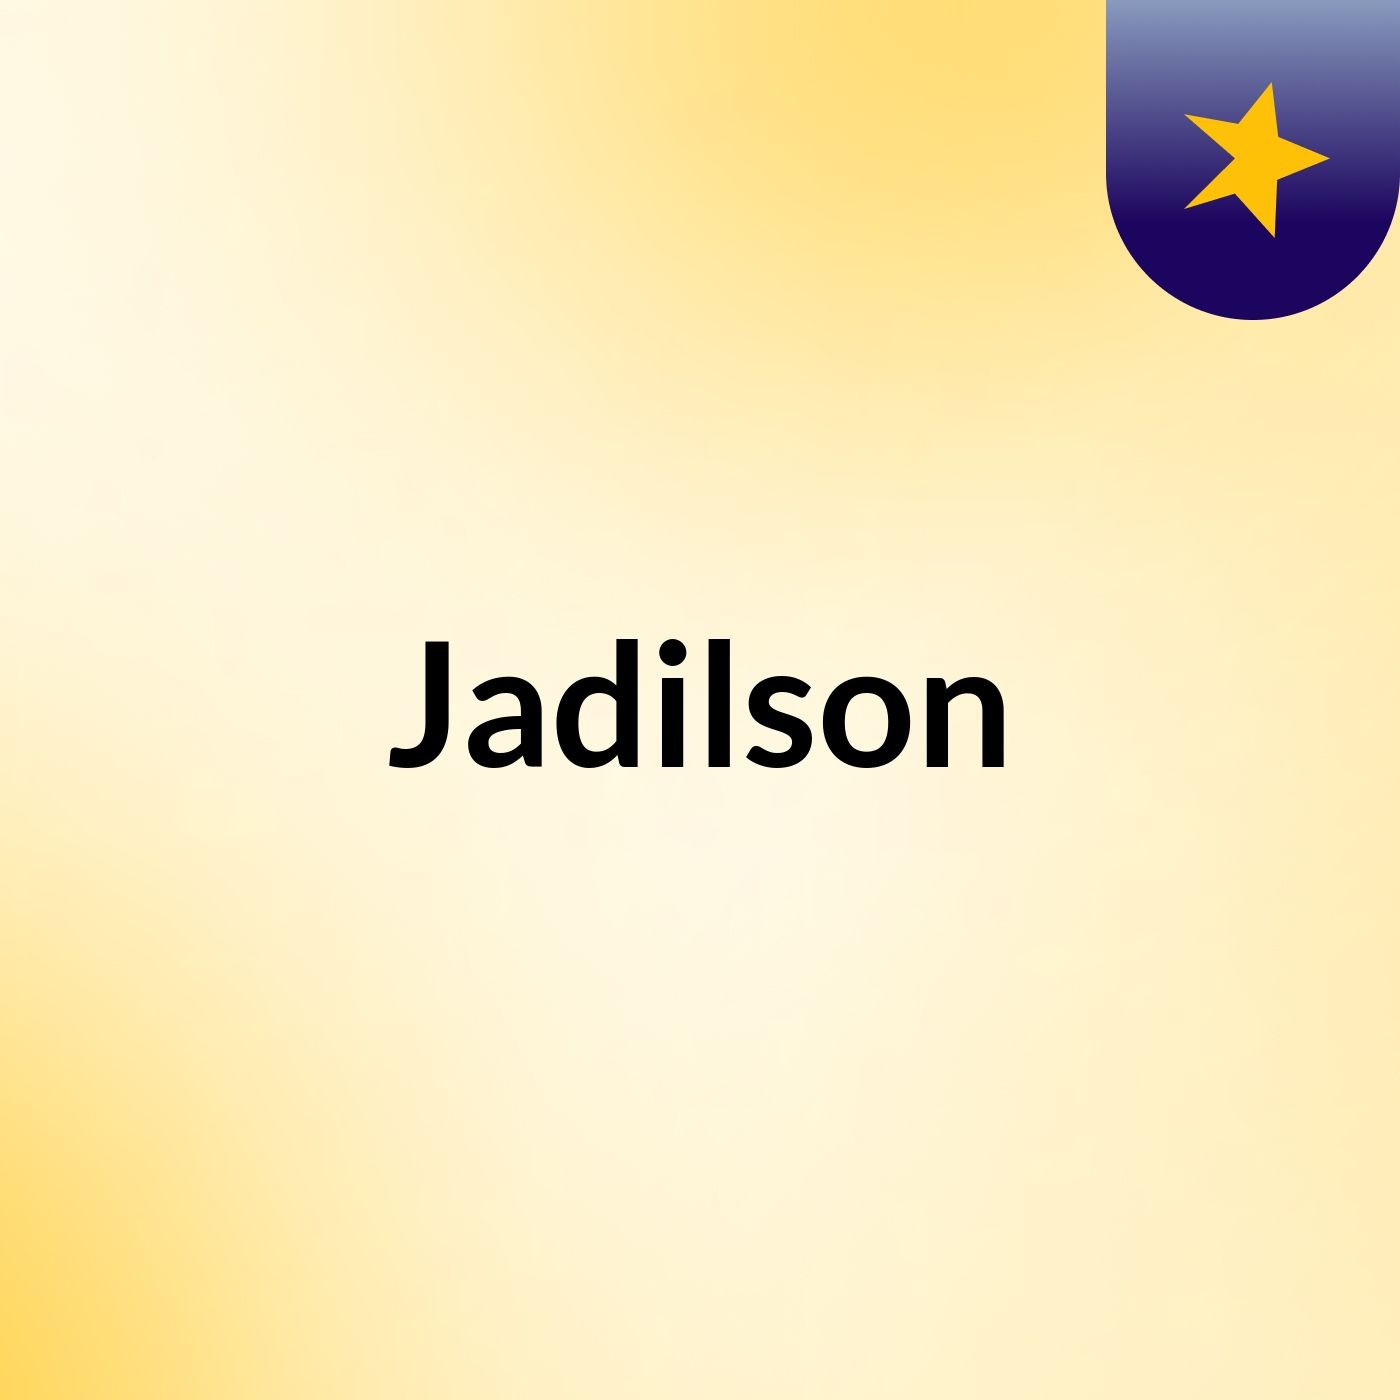 Jadilson